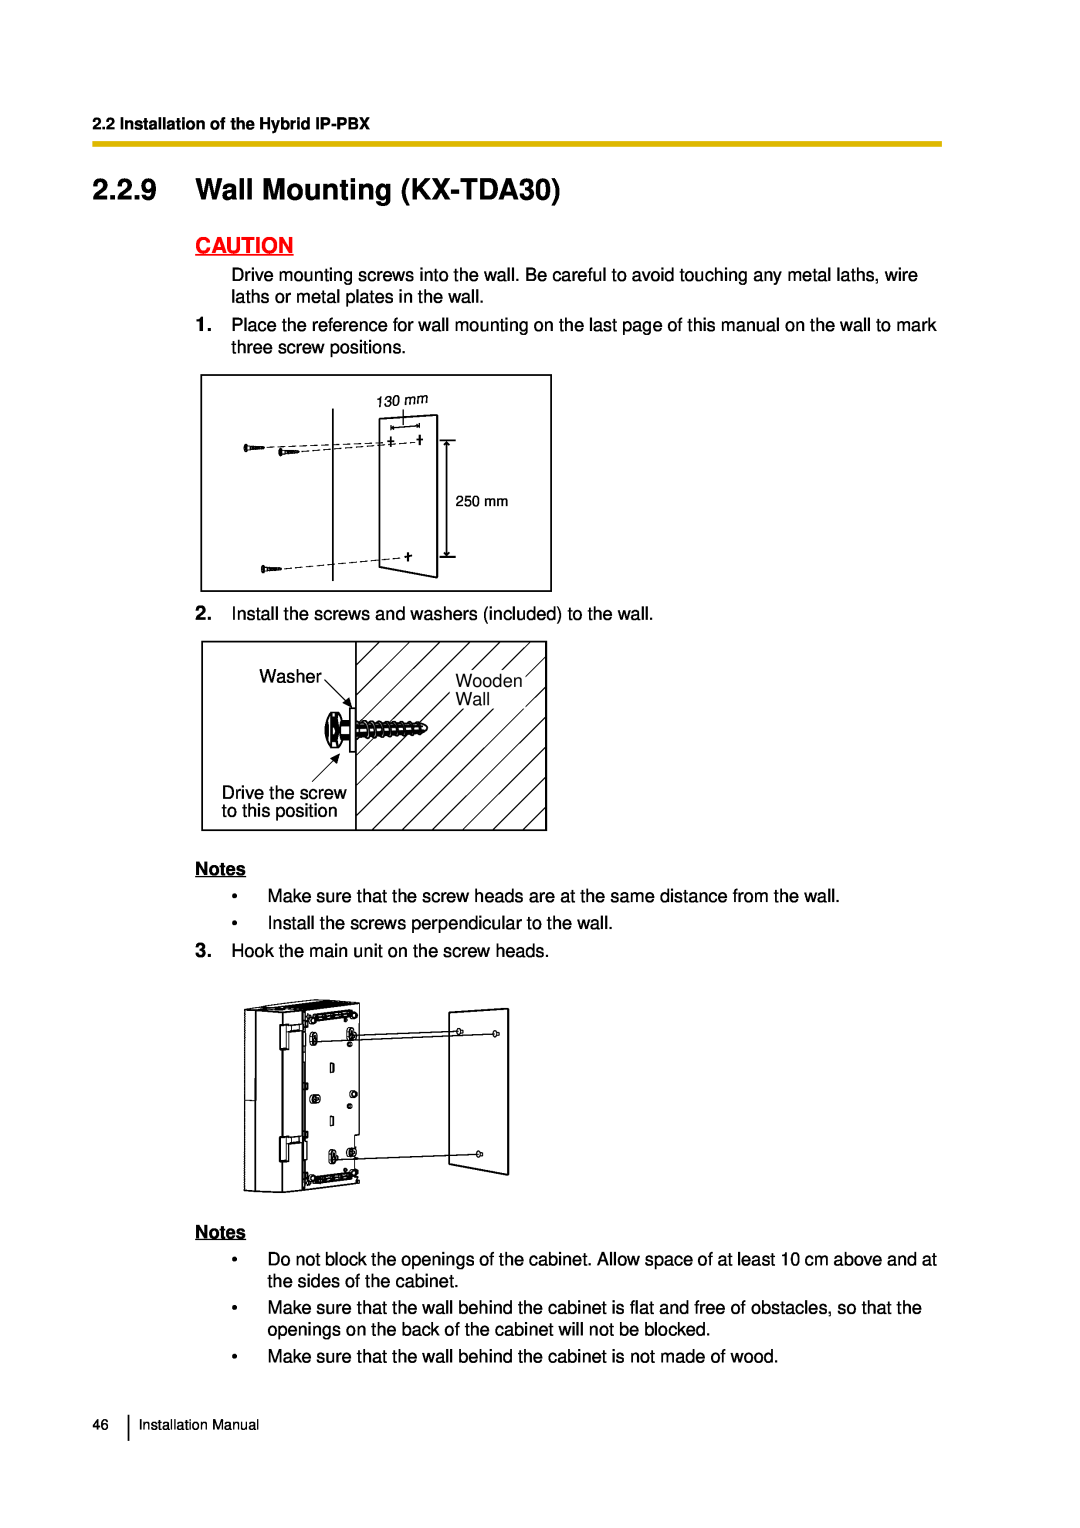 Panasonic installation manual 2.2.9Wall Mounting KX-TDA30, Notes 